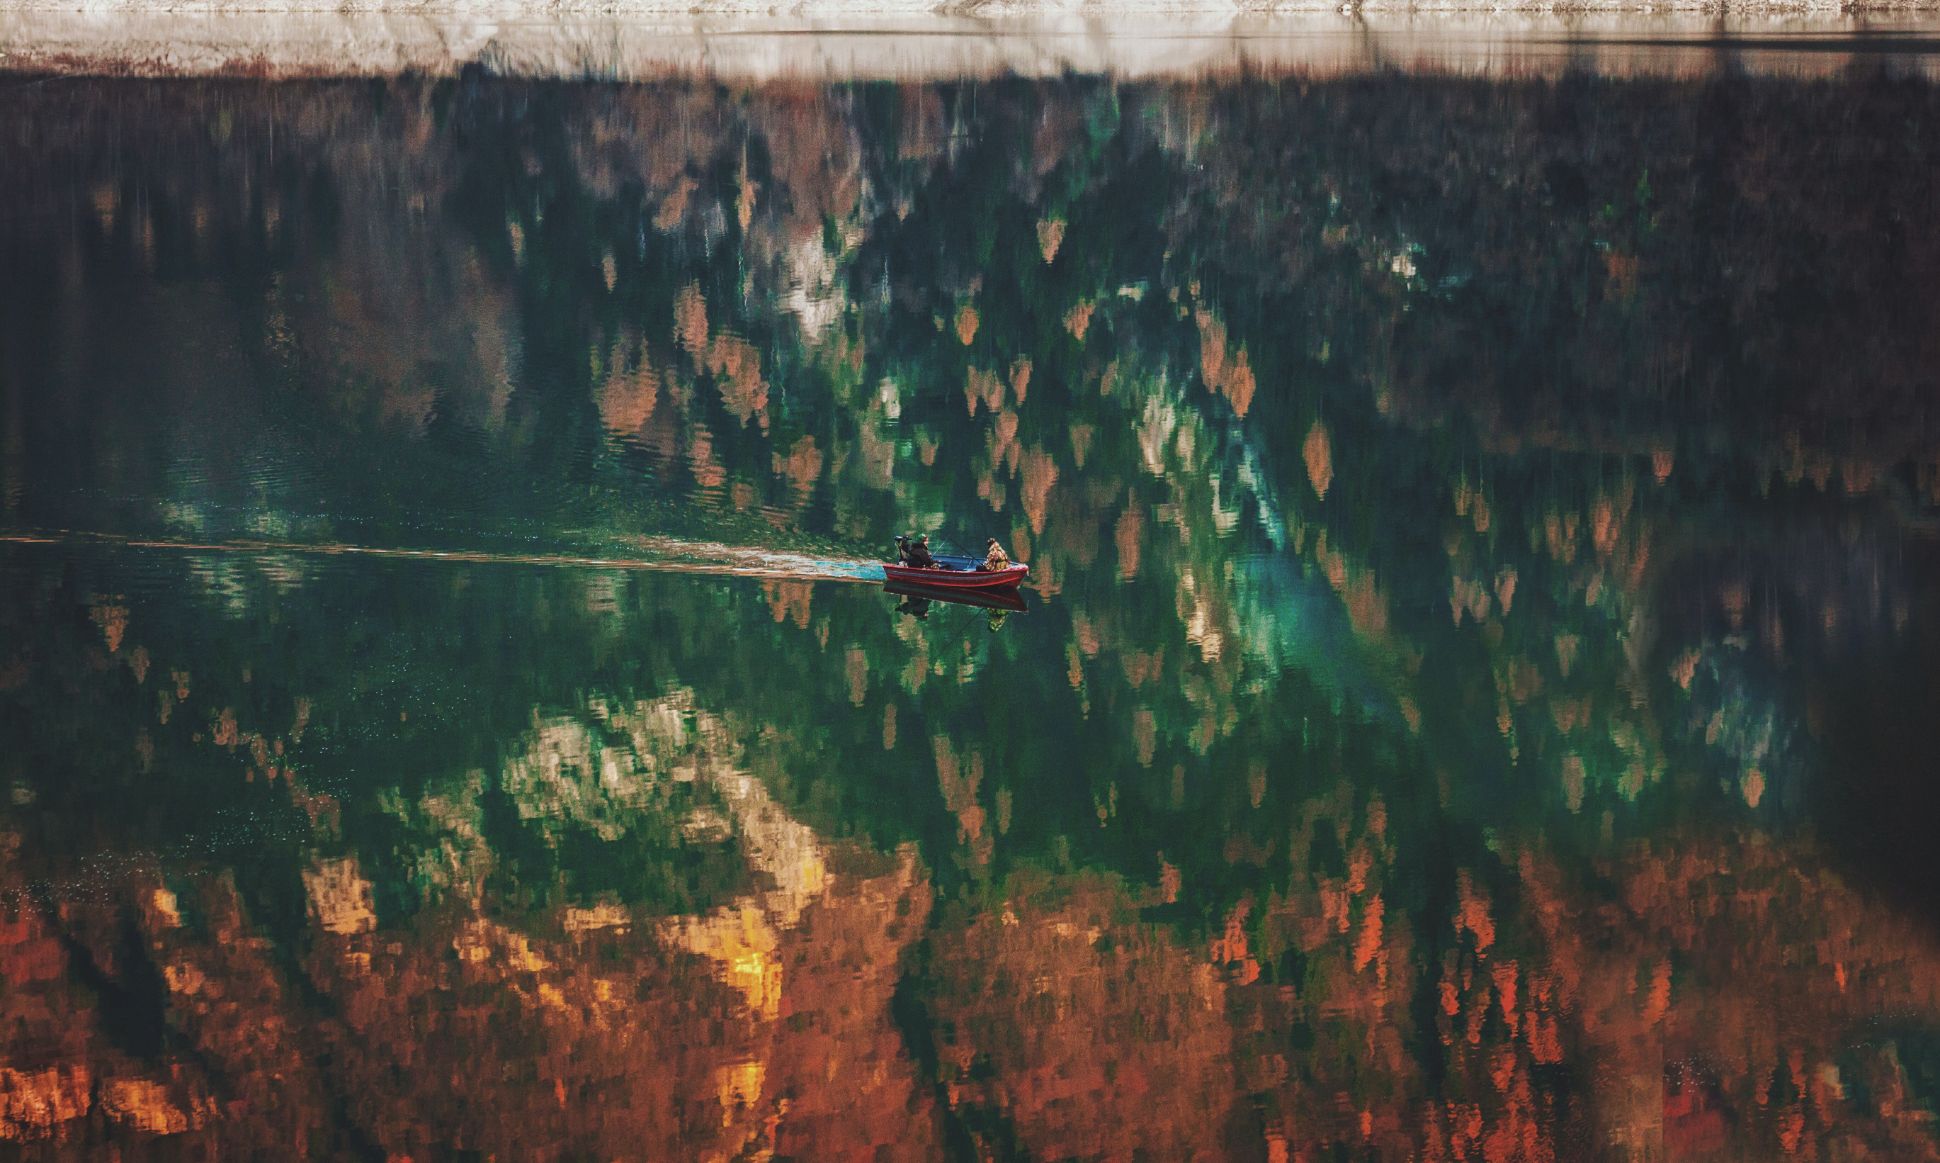 Deux personnes dans un petit bateau sur l'eau avec le reflet des arbres d'automne.